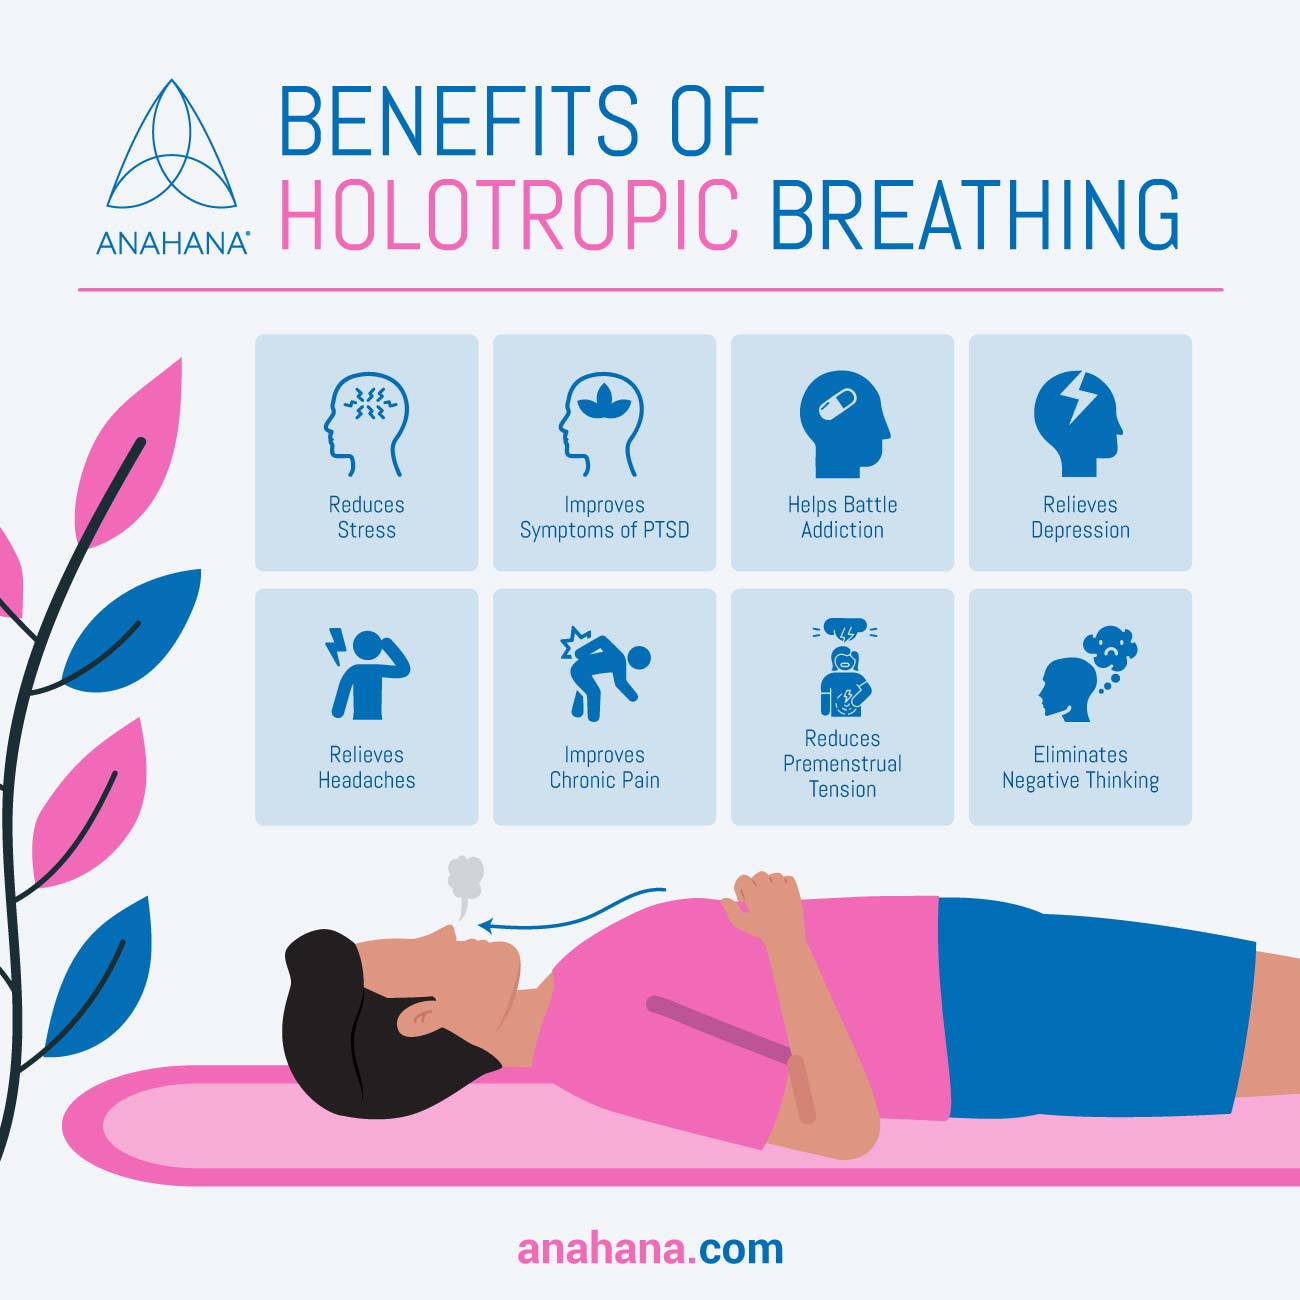 Benefits of holotropic breathing